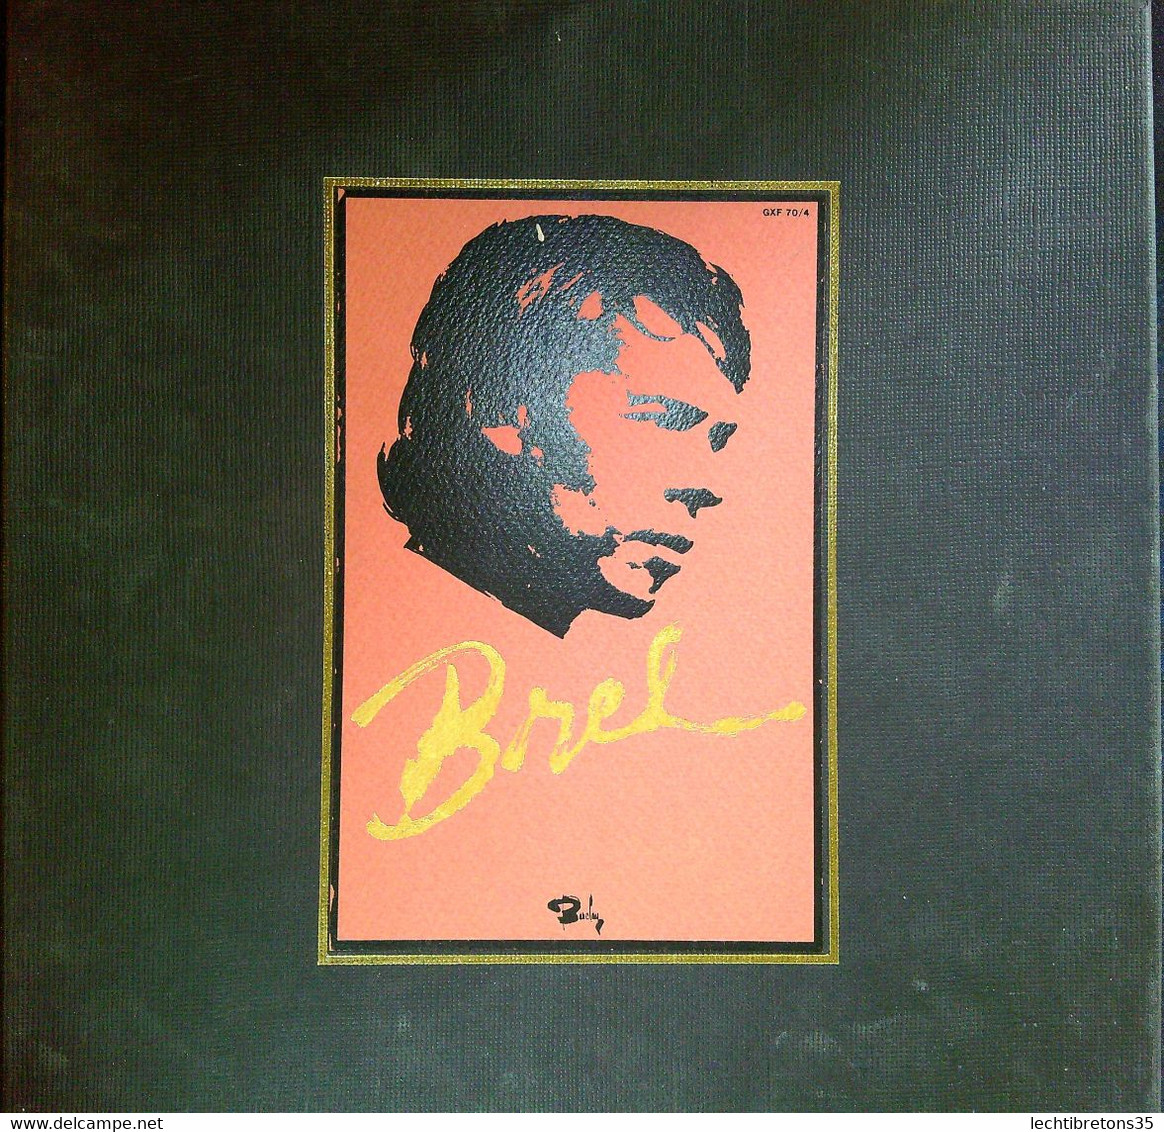 Rare Coffret LP JAPON Numéroté (545) Jacques Brel GXF 70/4 Barclay JAPAN - Altri - Francese